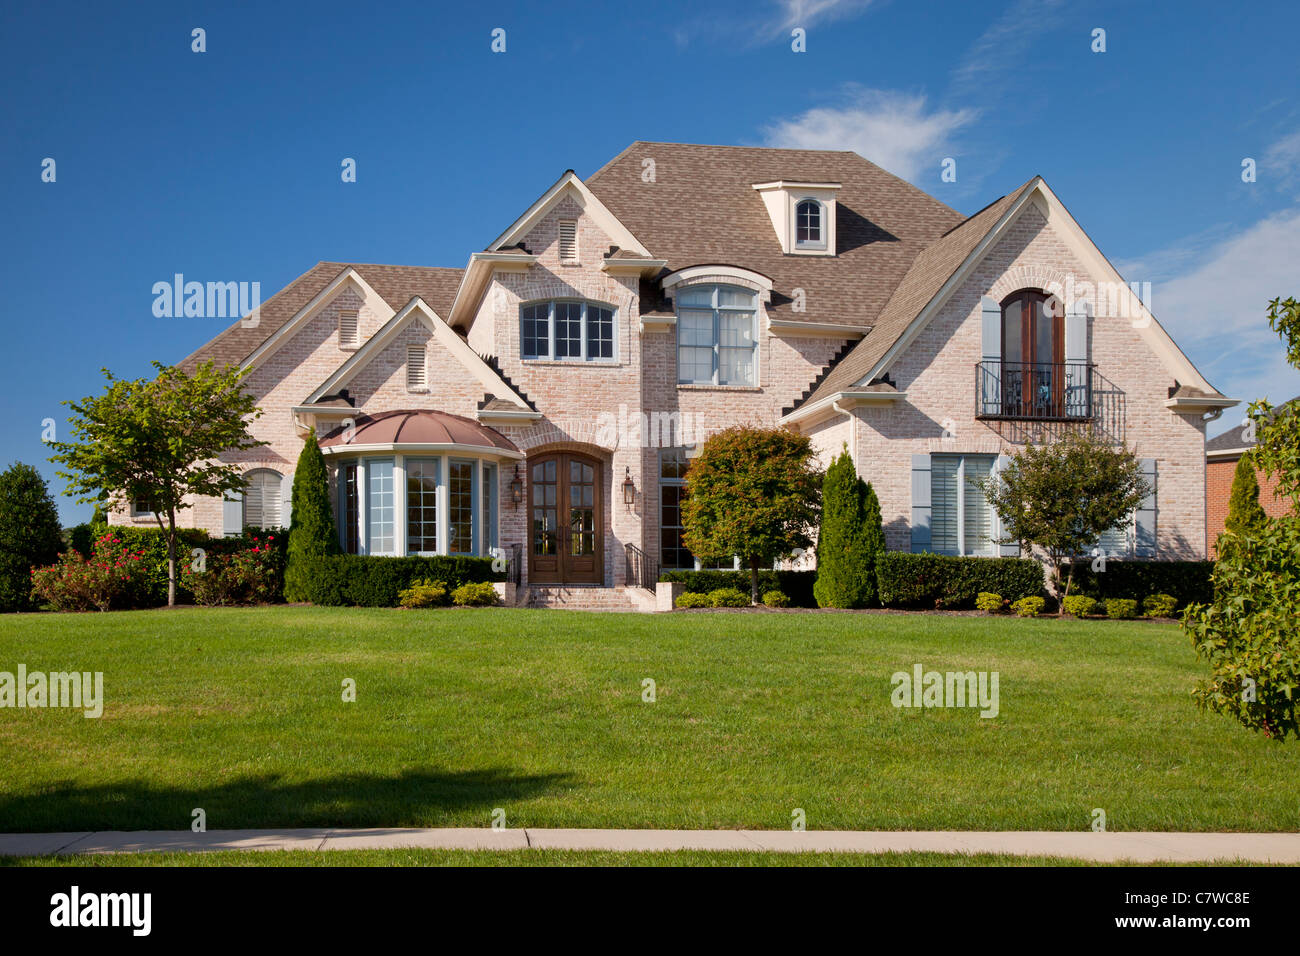 Tipica casa in nice americano suddivisione vicino a Nashville Tennessee USA Foto Stock